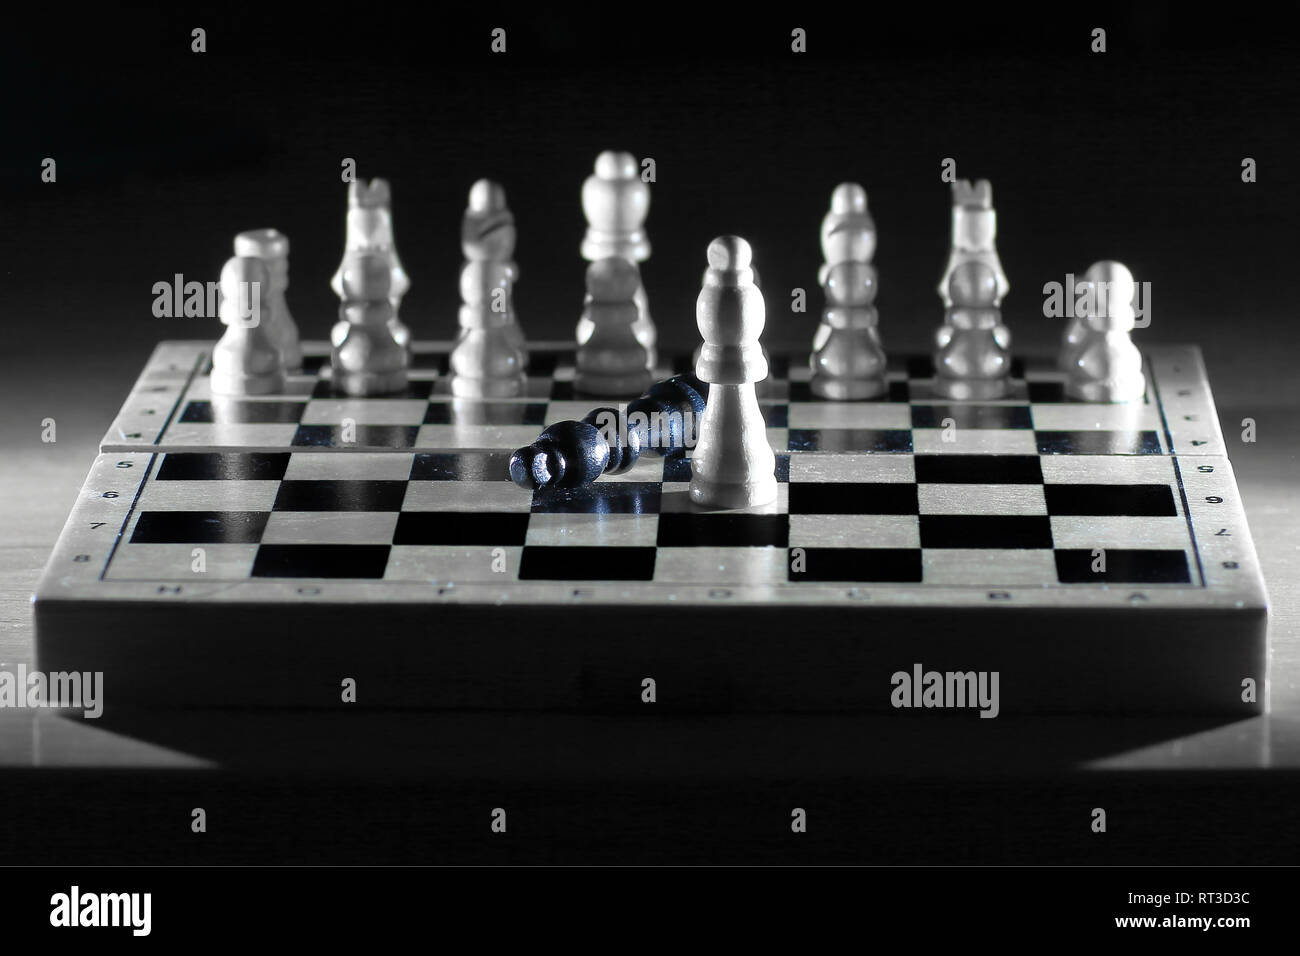 Chess composition du conseil d'administration.Le concept de victoire Banque D'Images